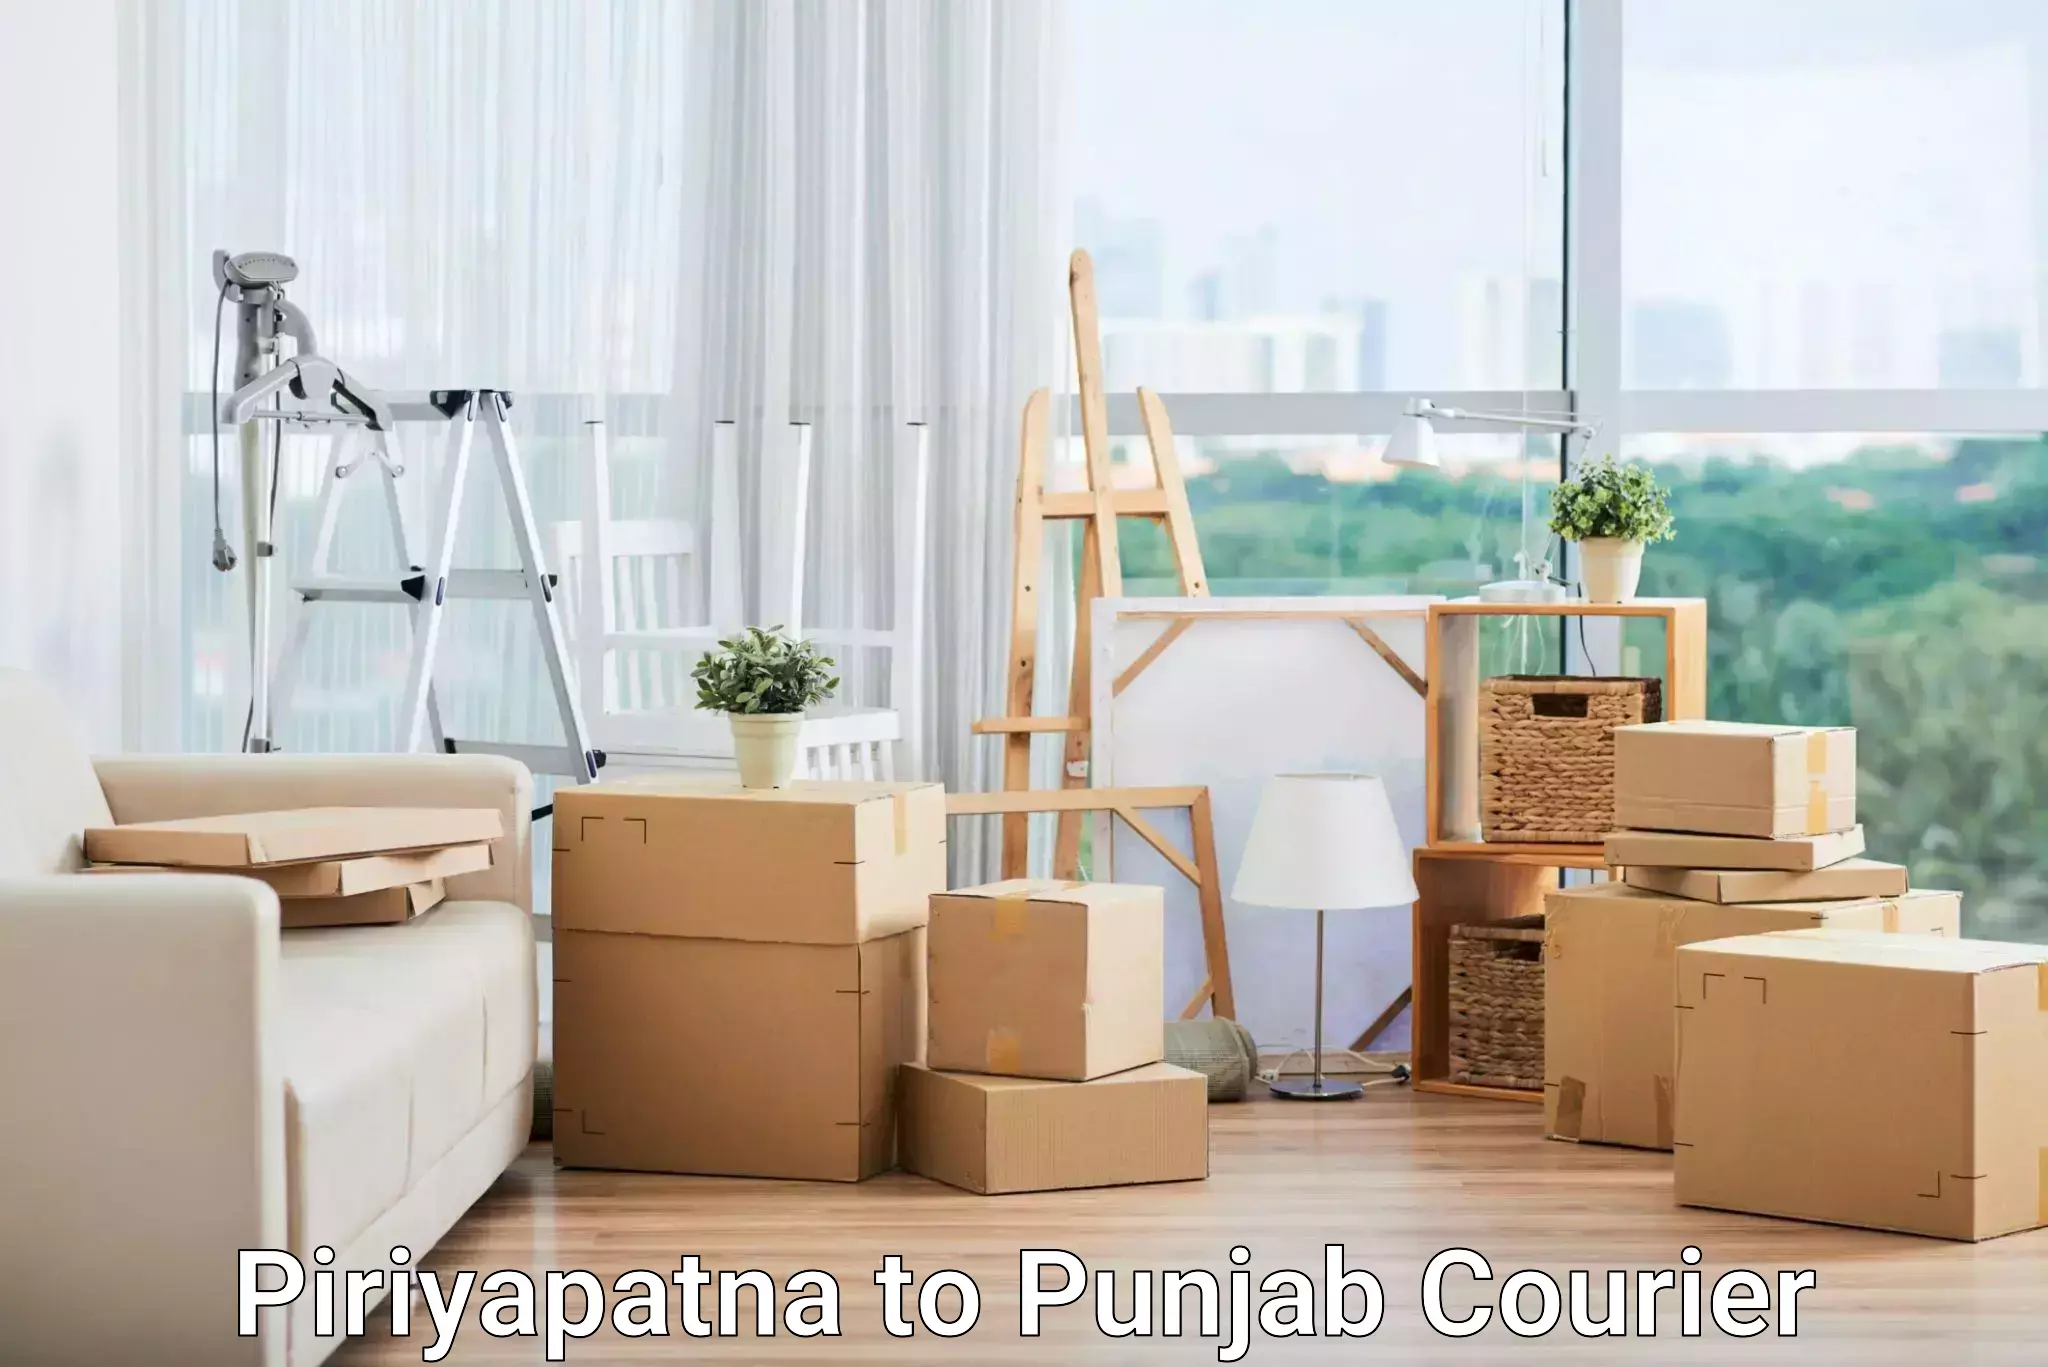 Urgent courier needs Piriyapatna to Dasuya